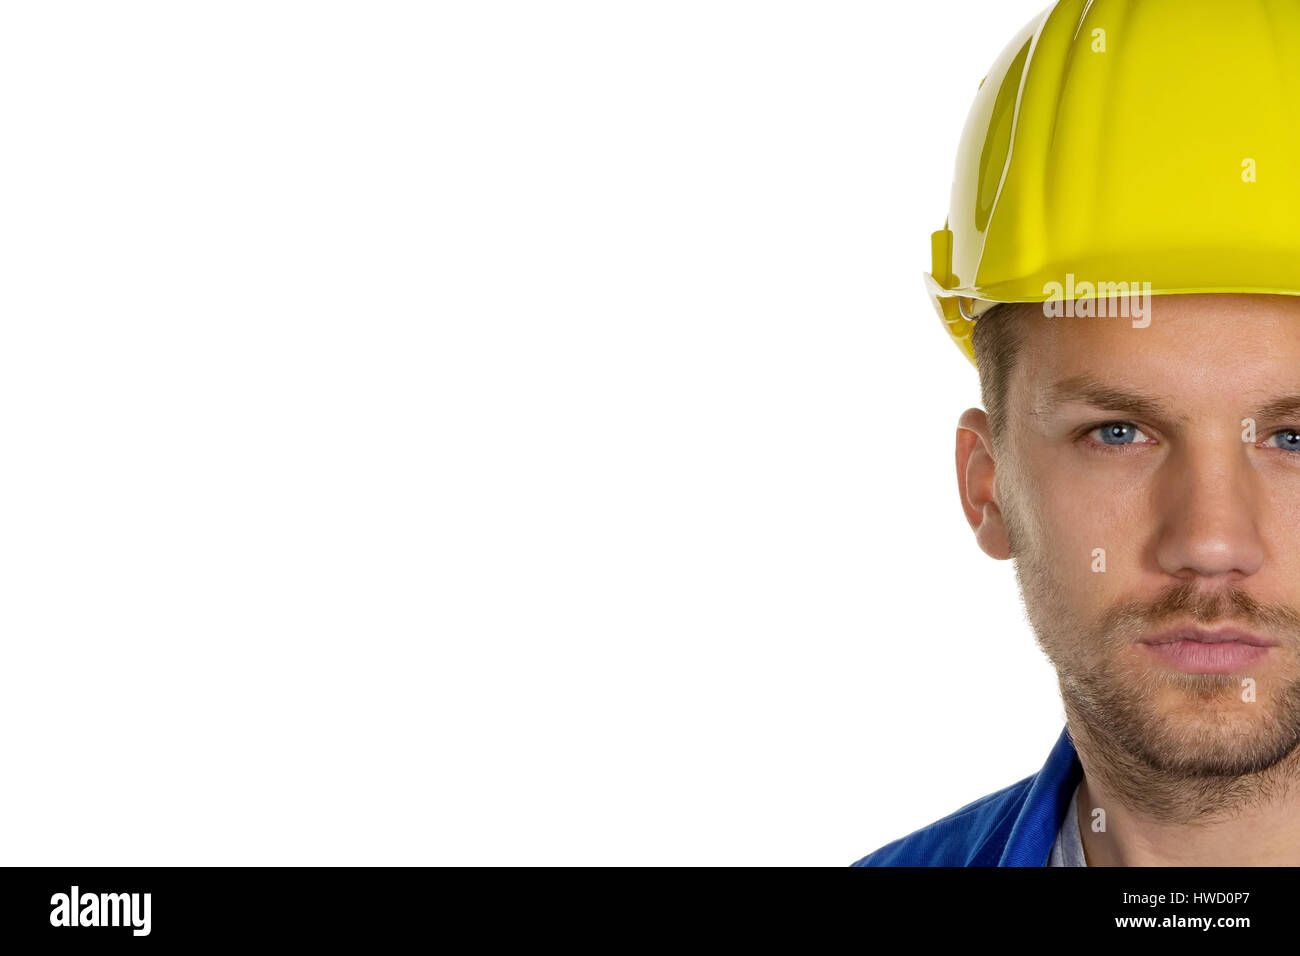 Un travailleur dans une entreprise industrielle (artisan) avec casque, Ein Arbeiter in einem ( Gewerbebetrieb Handwerker ) mit Helm Banque D'Images